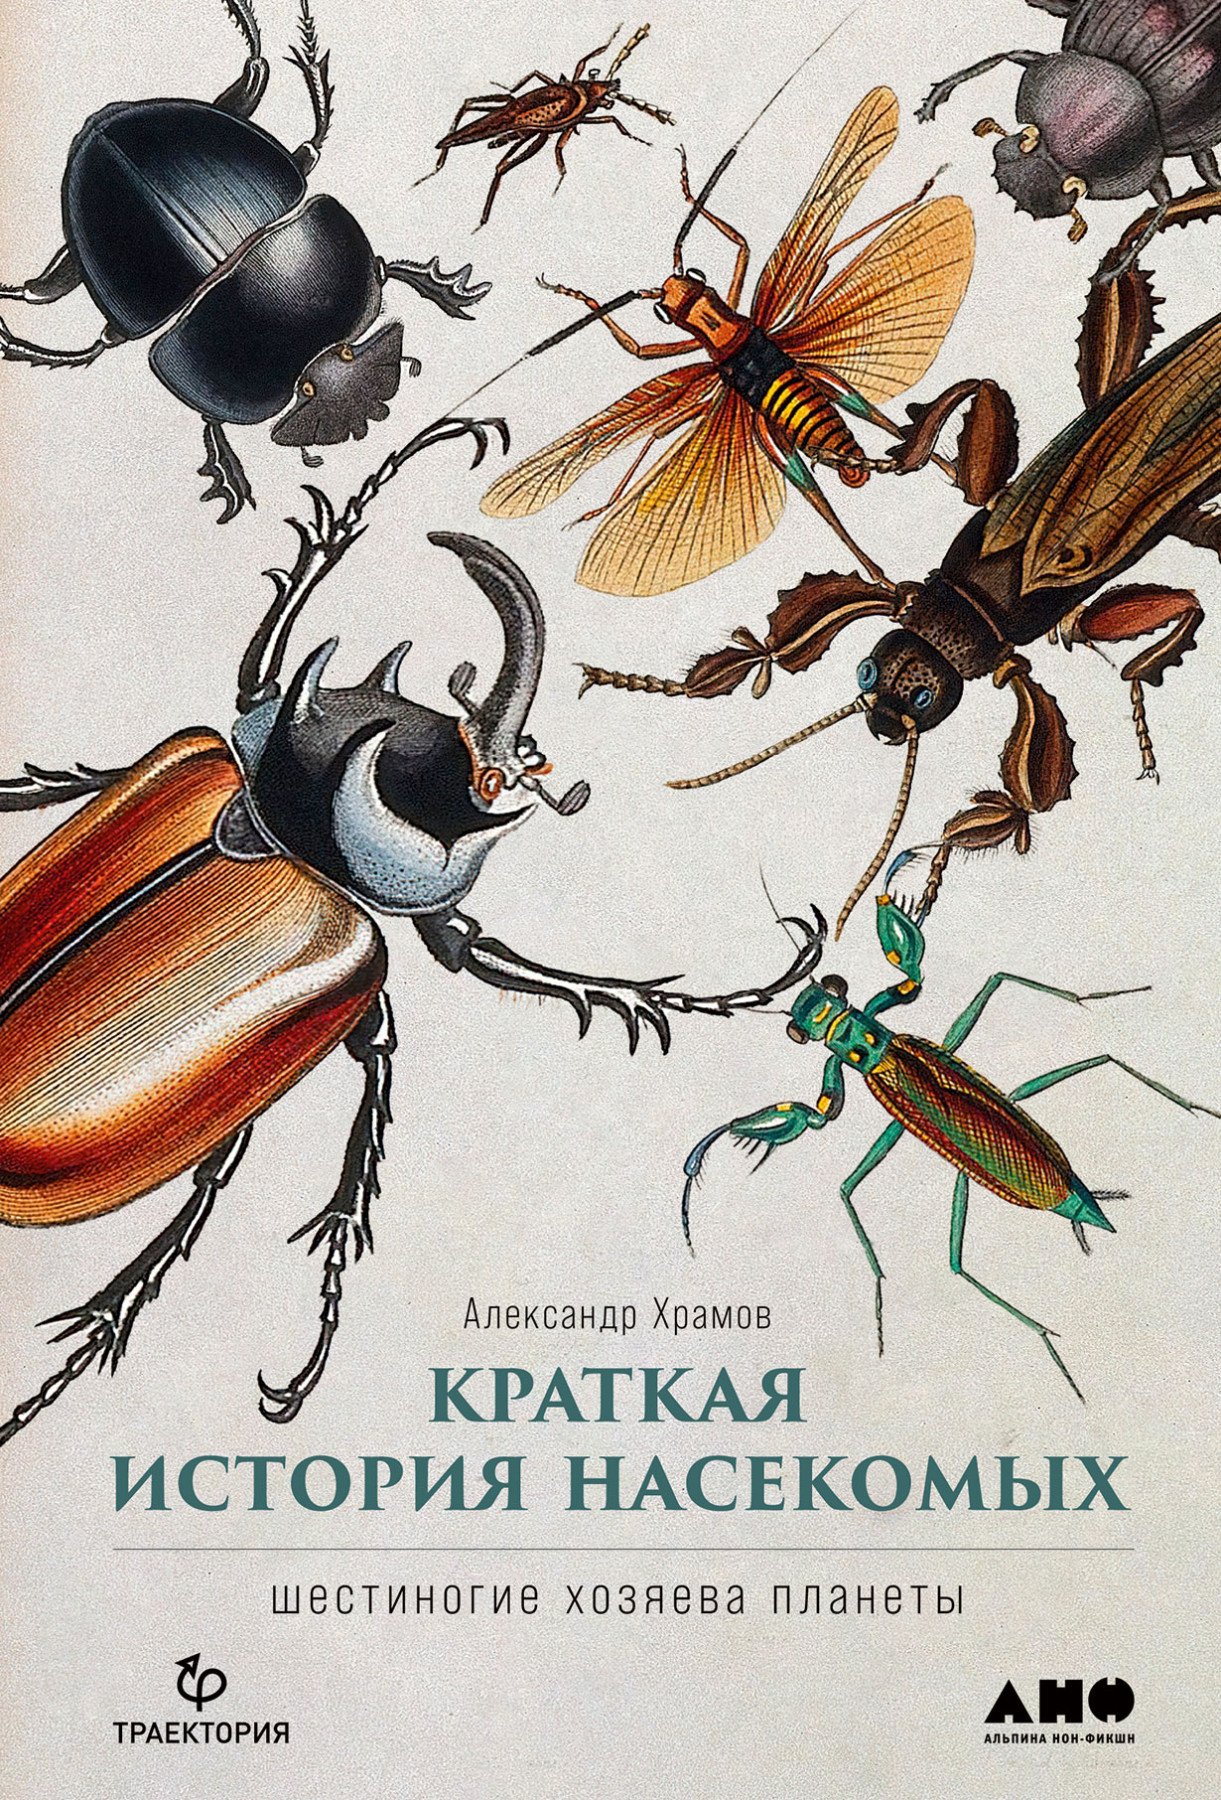 Краткая история насекомых обложка.